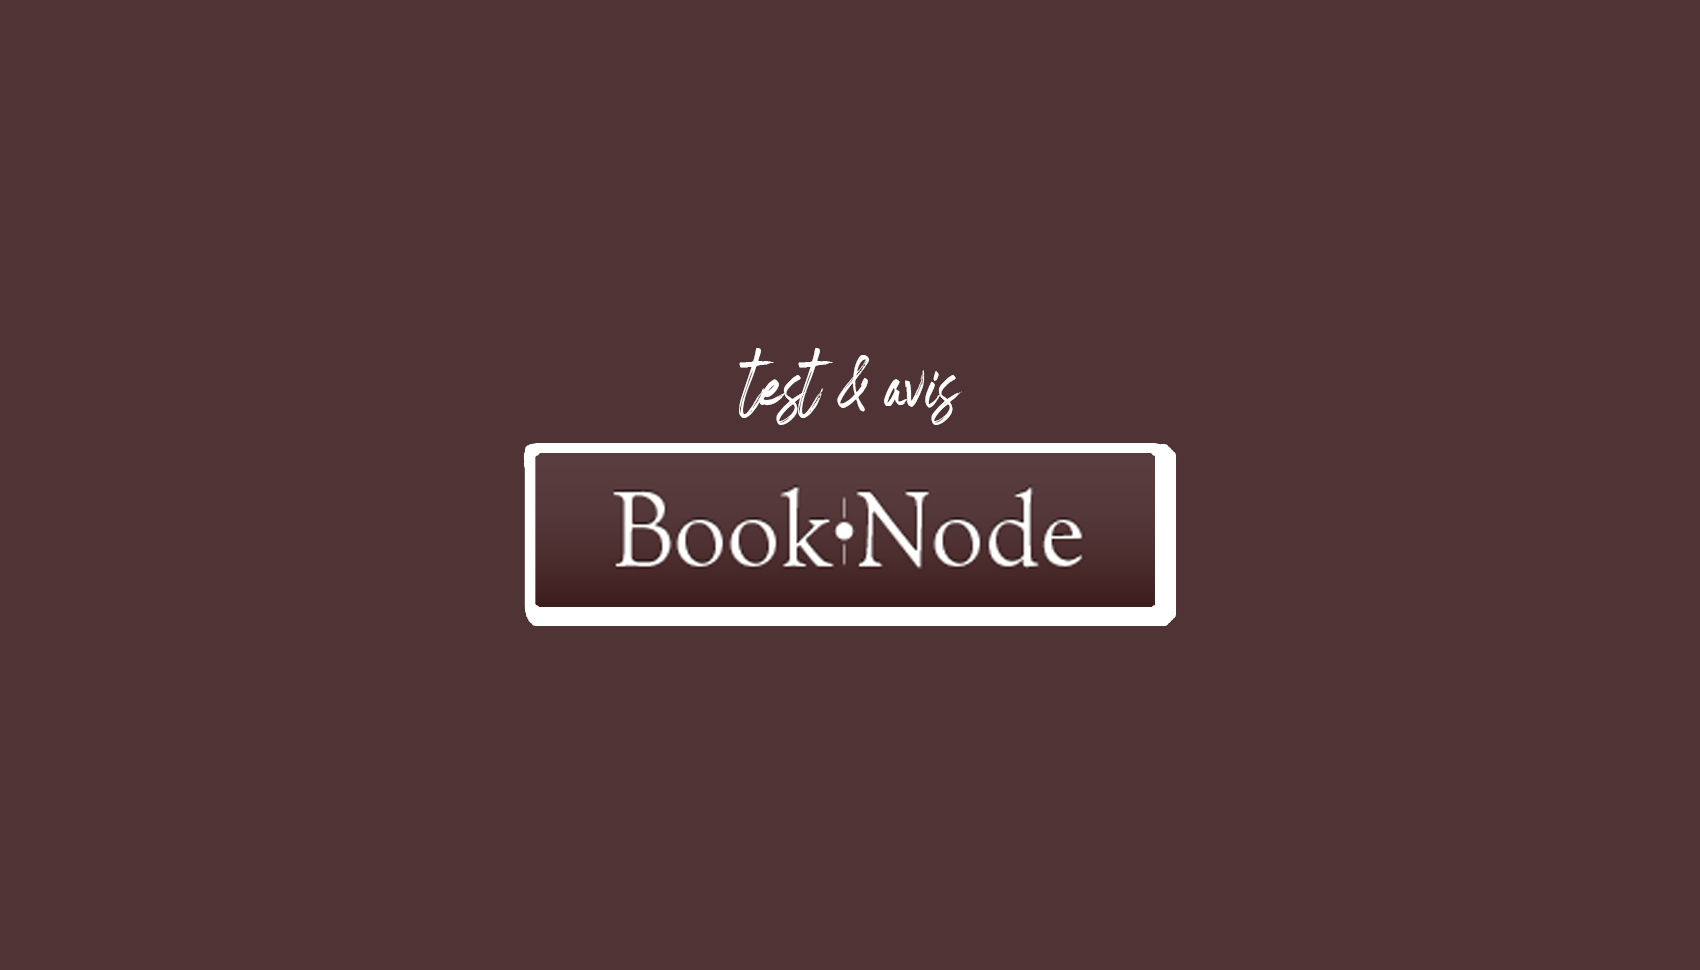 Booknode: Bezplatná virtuálna knižnica pre milovníkov čítania (recenzia a test)